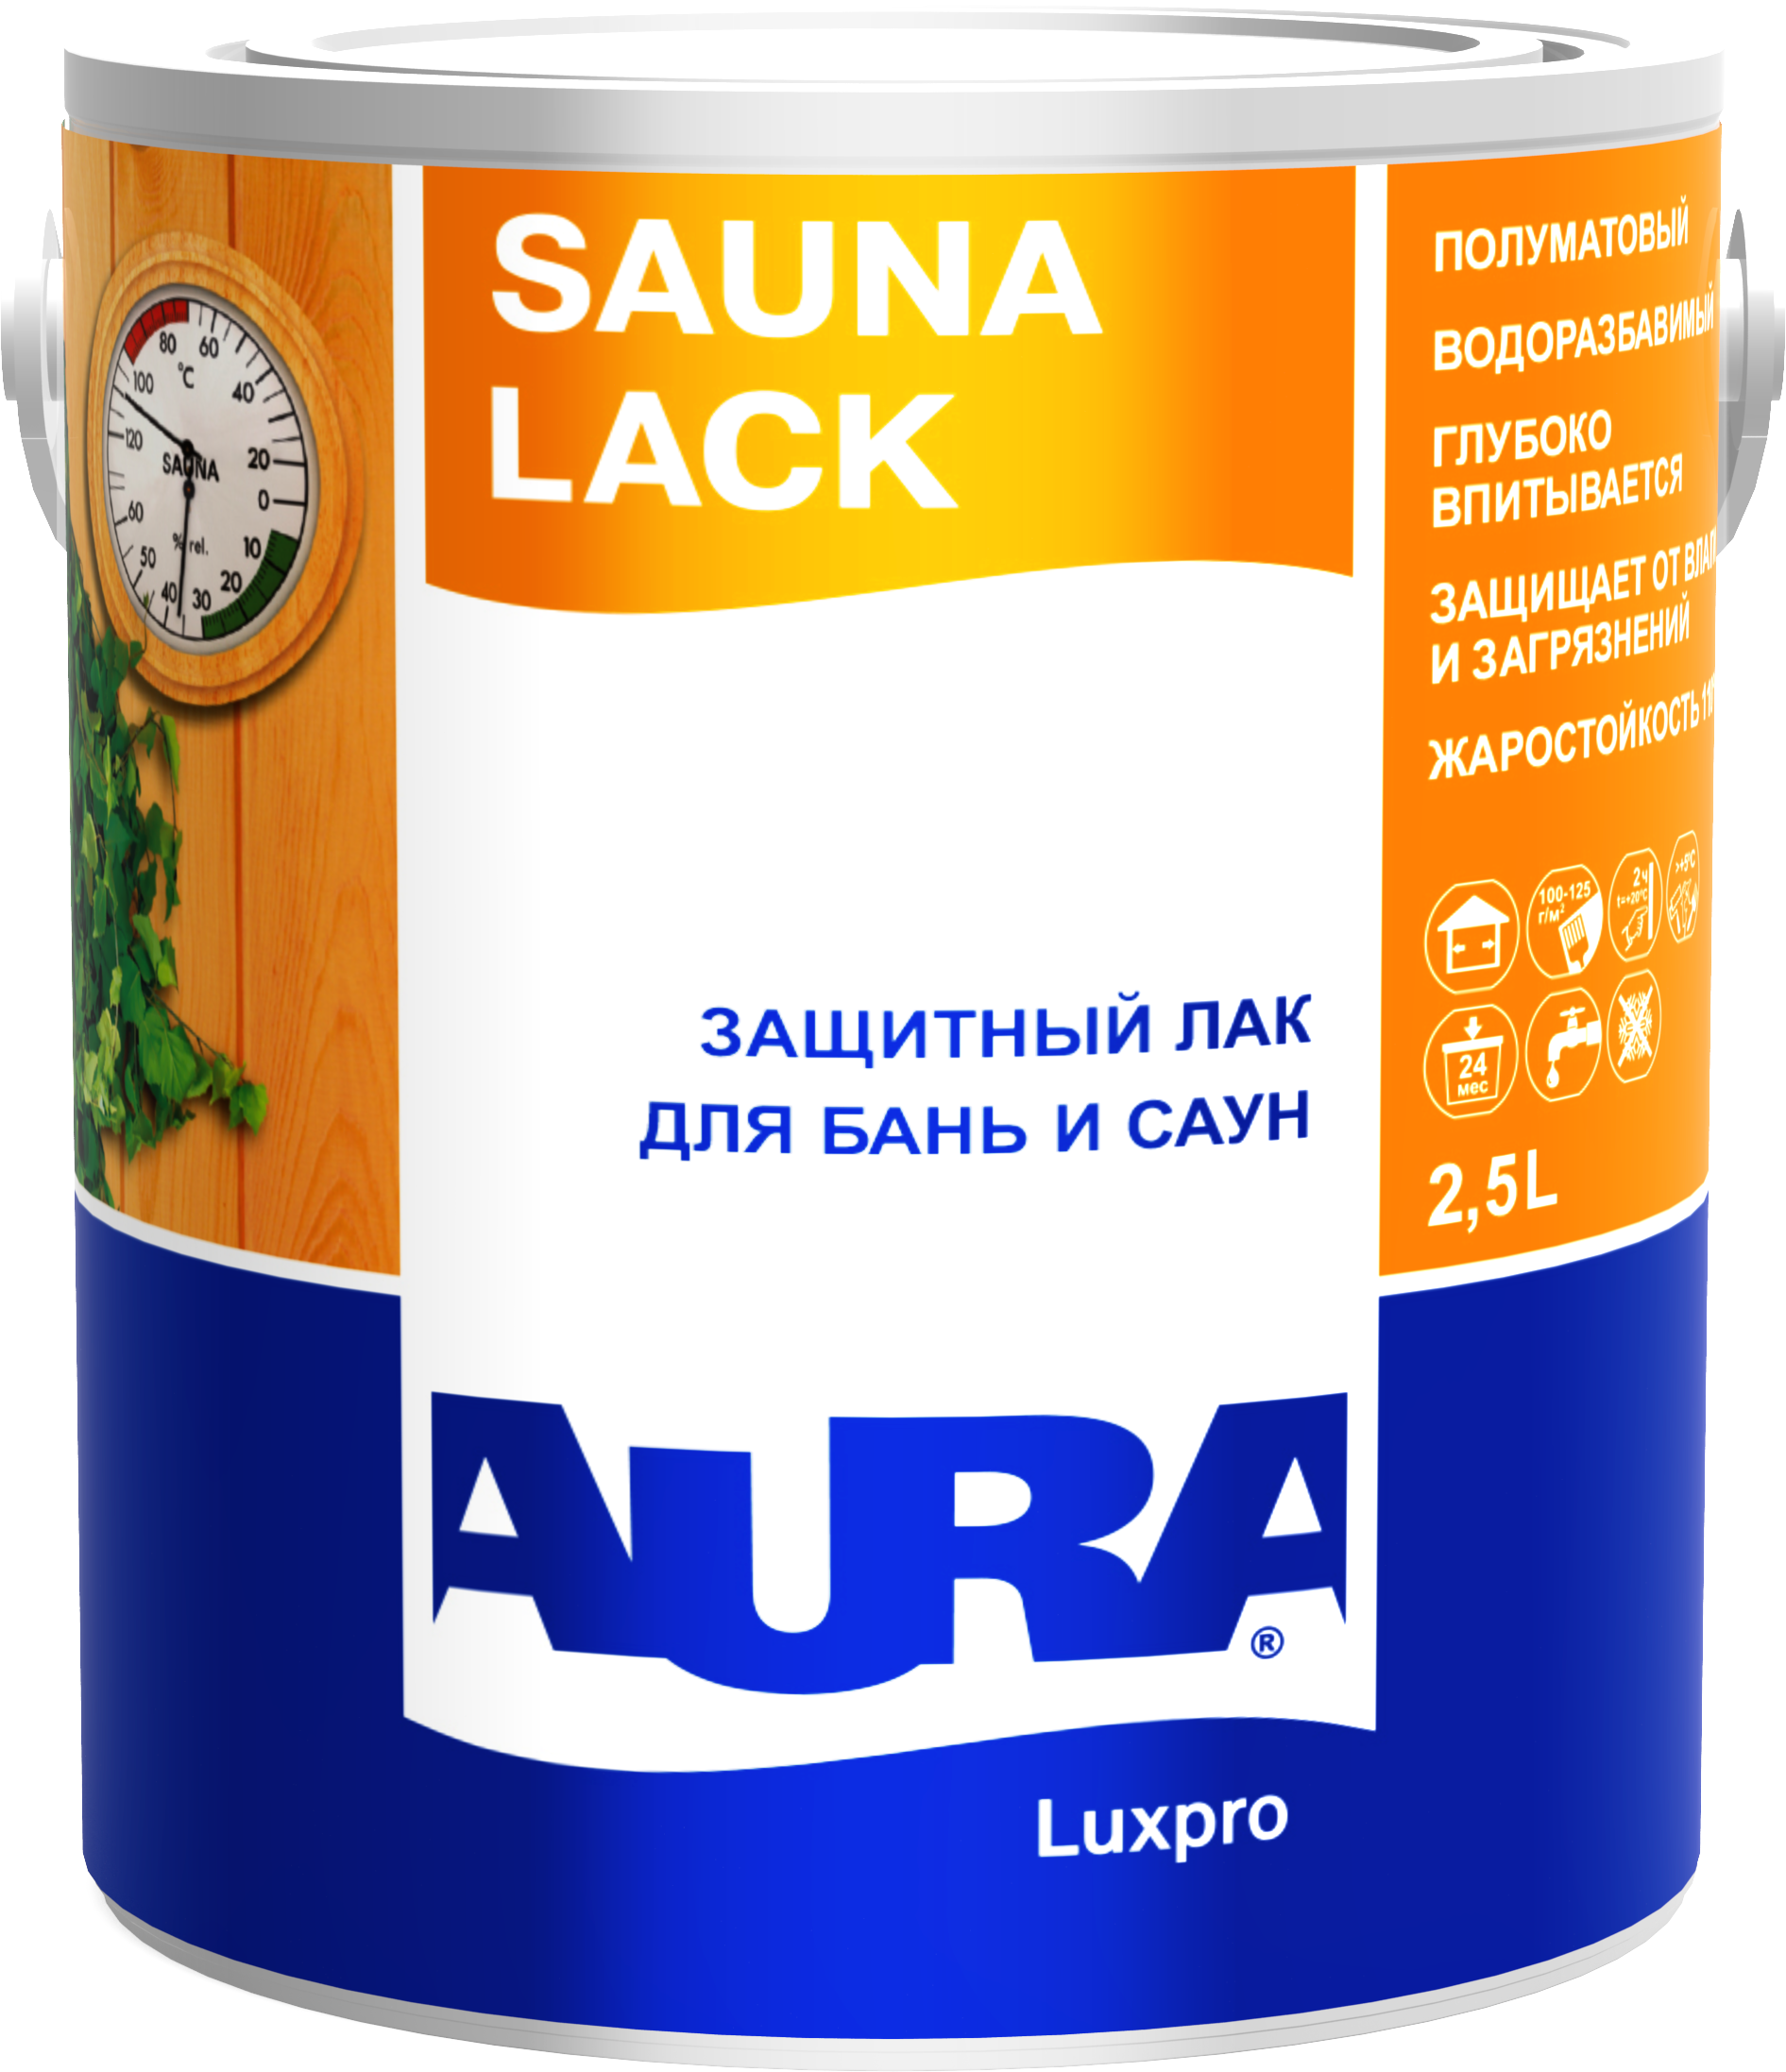 Лак для бань и саун  Aura Luxpro Sauna Lack 2,5л